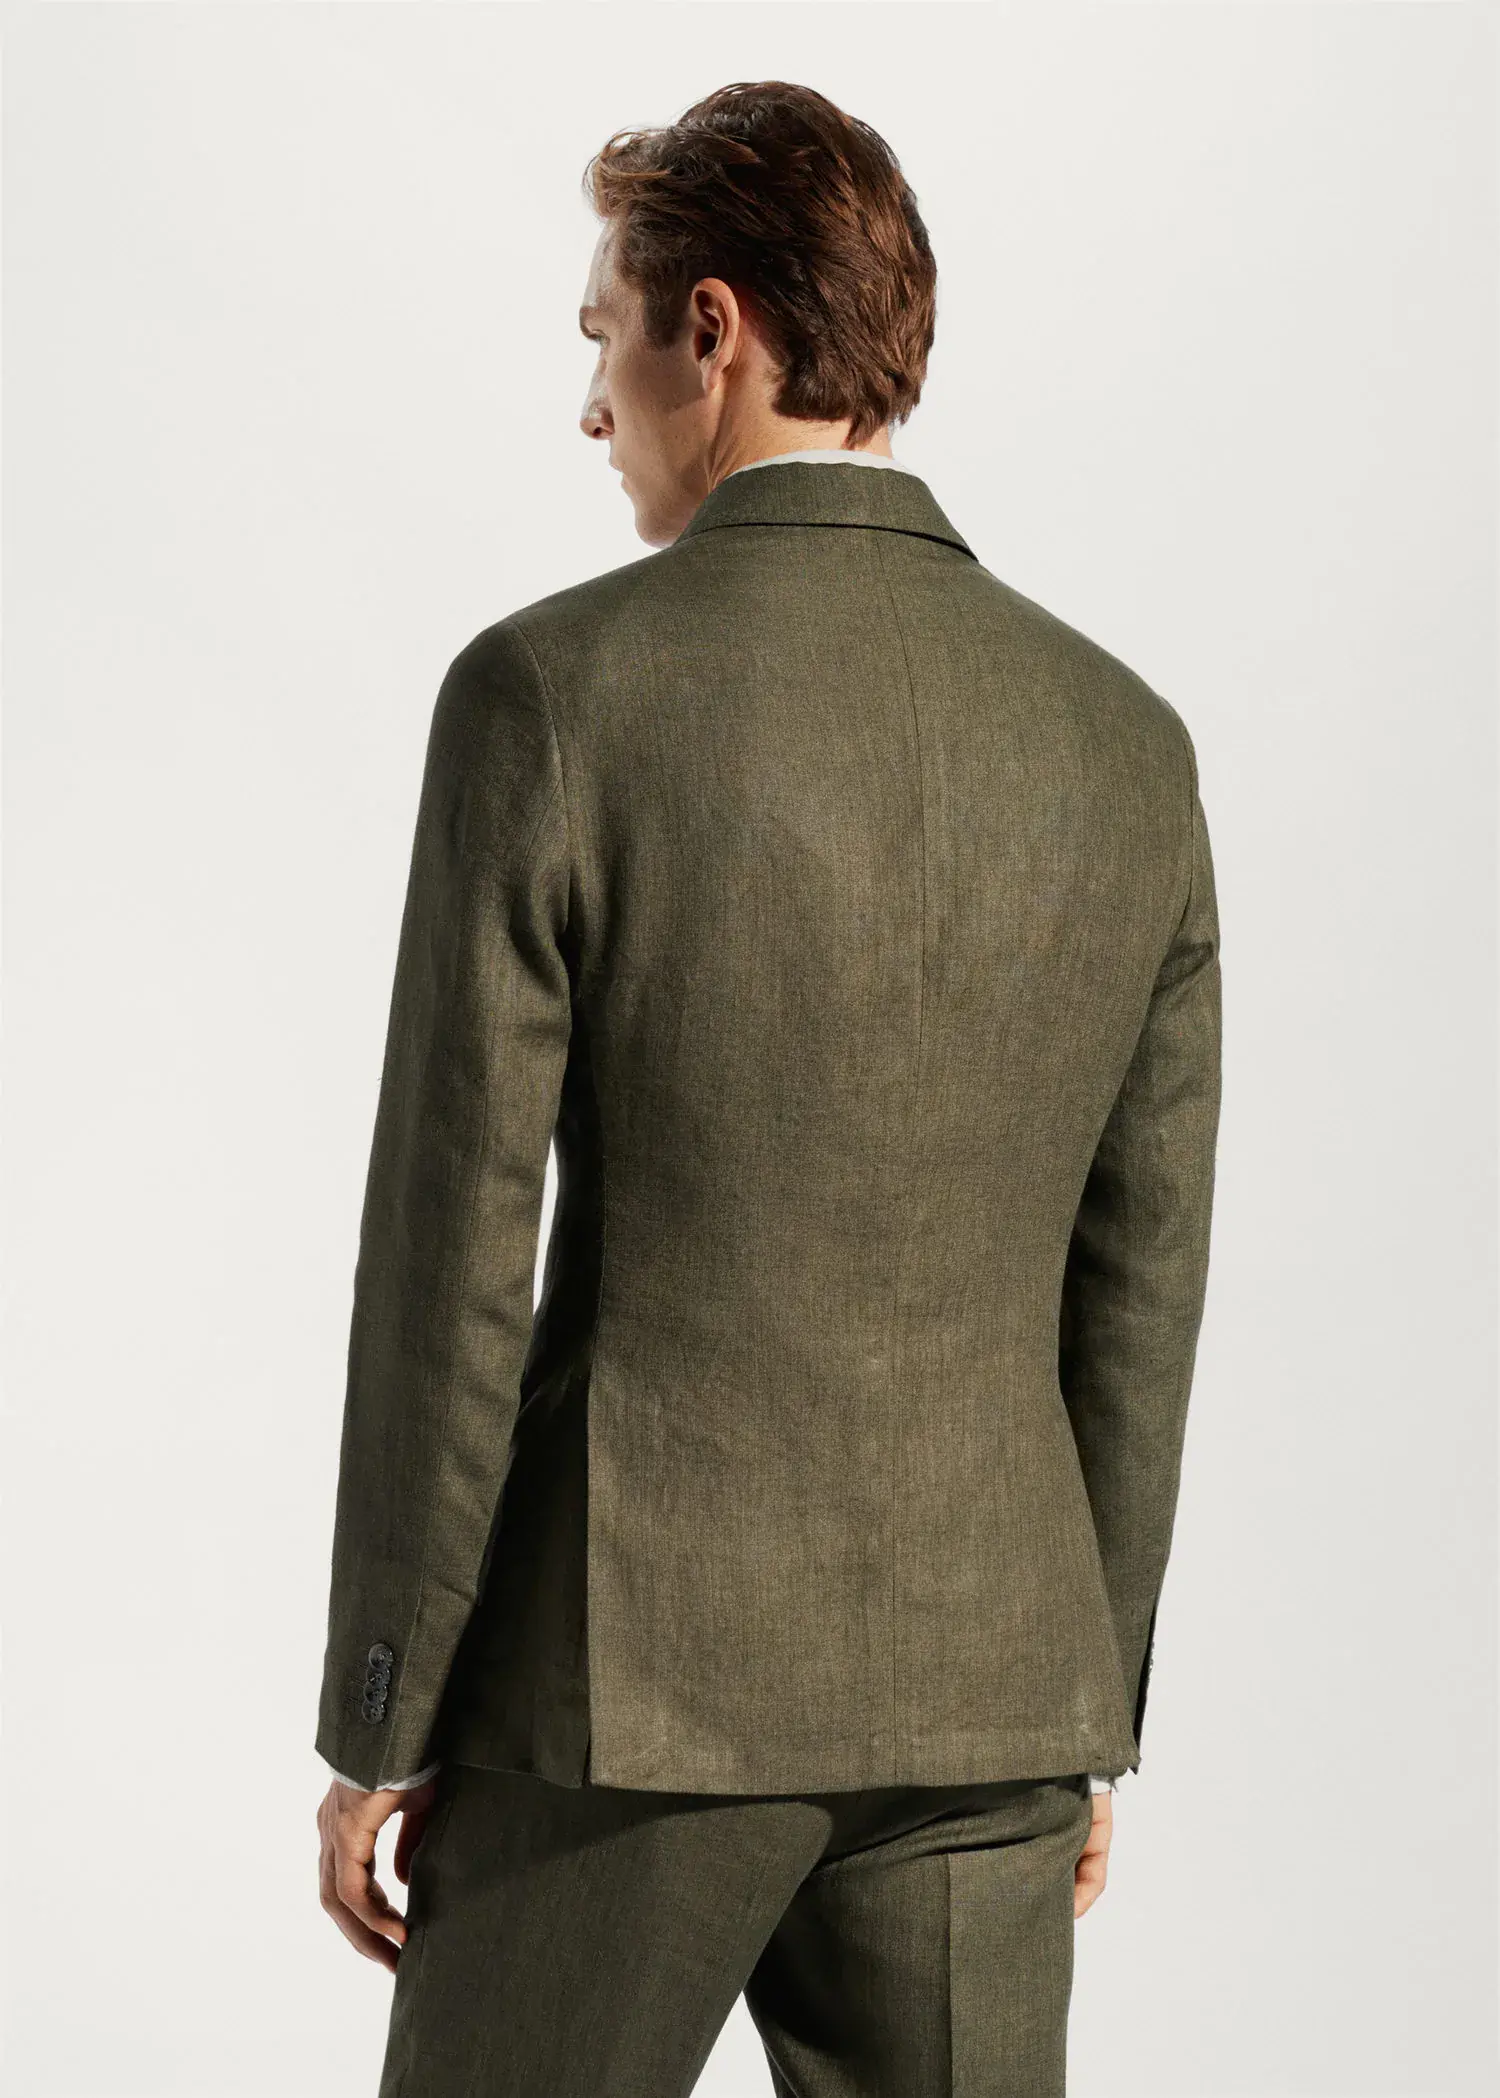 Mango Blazer suit 100% linen. a man wearing a suit jacket and pants. 